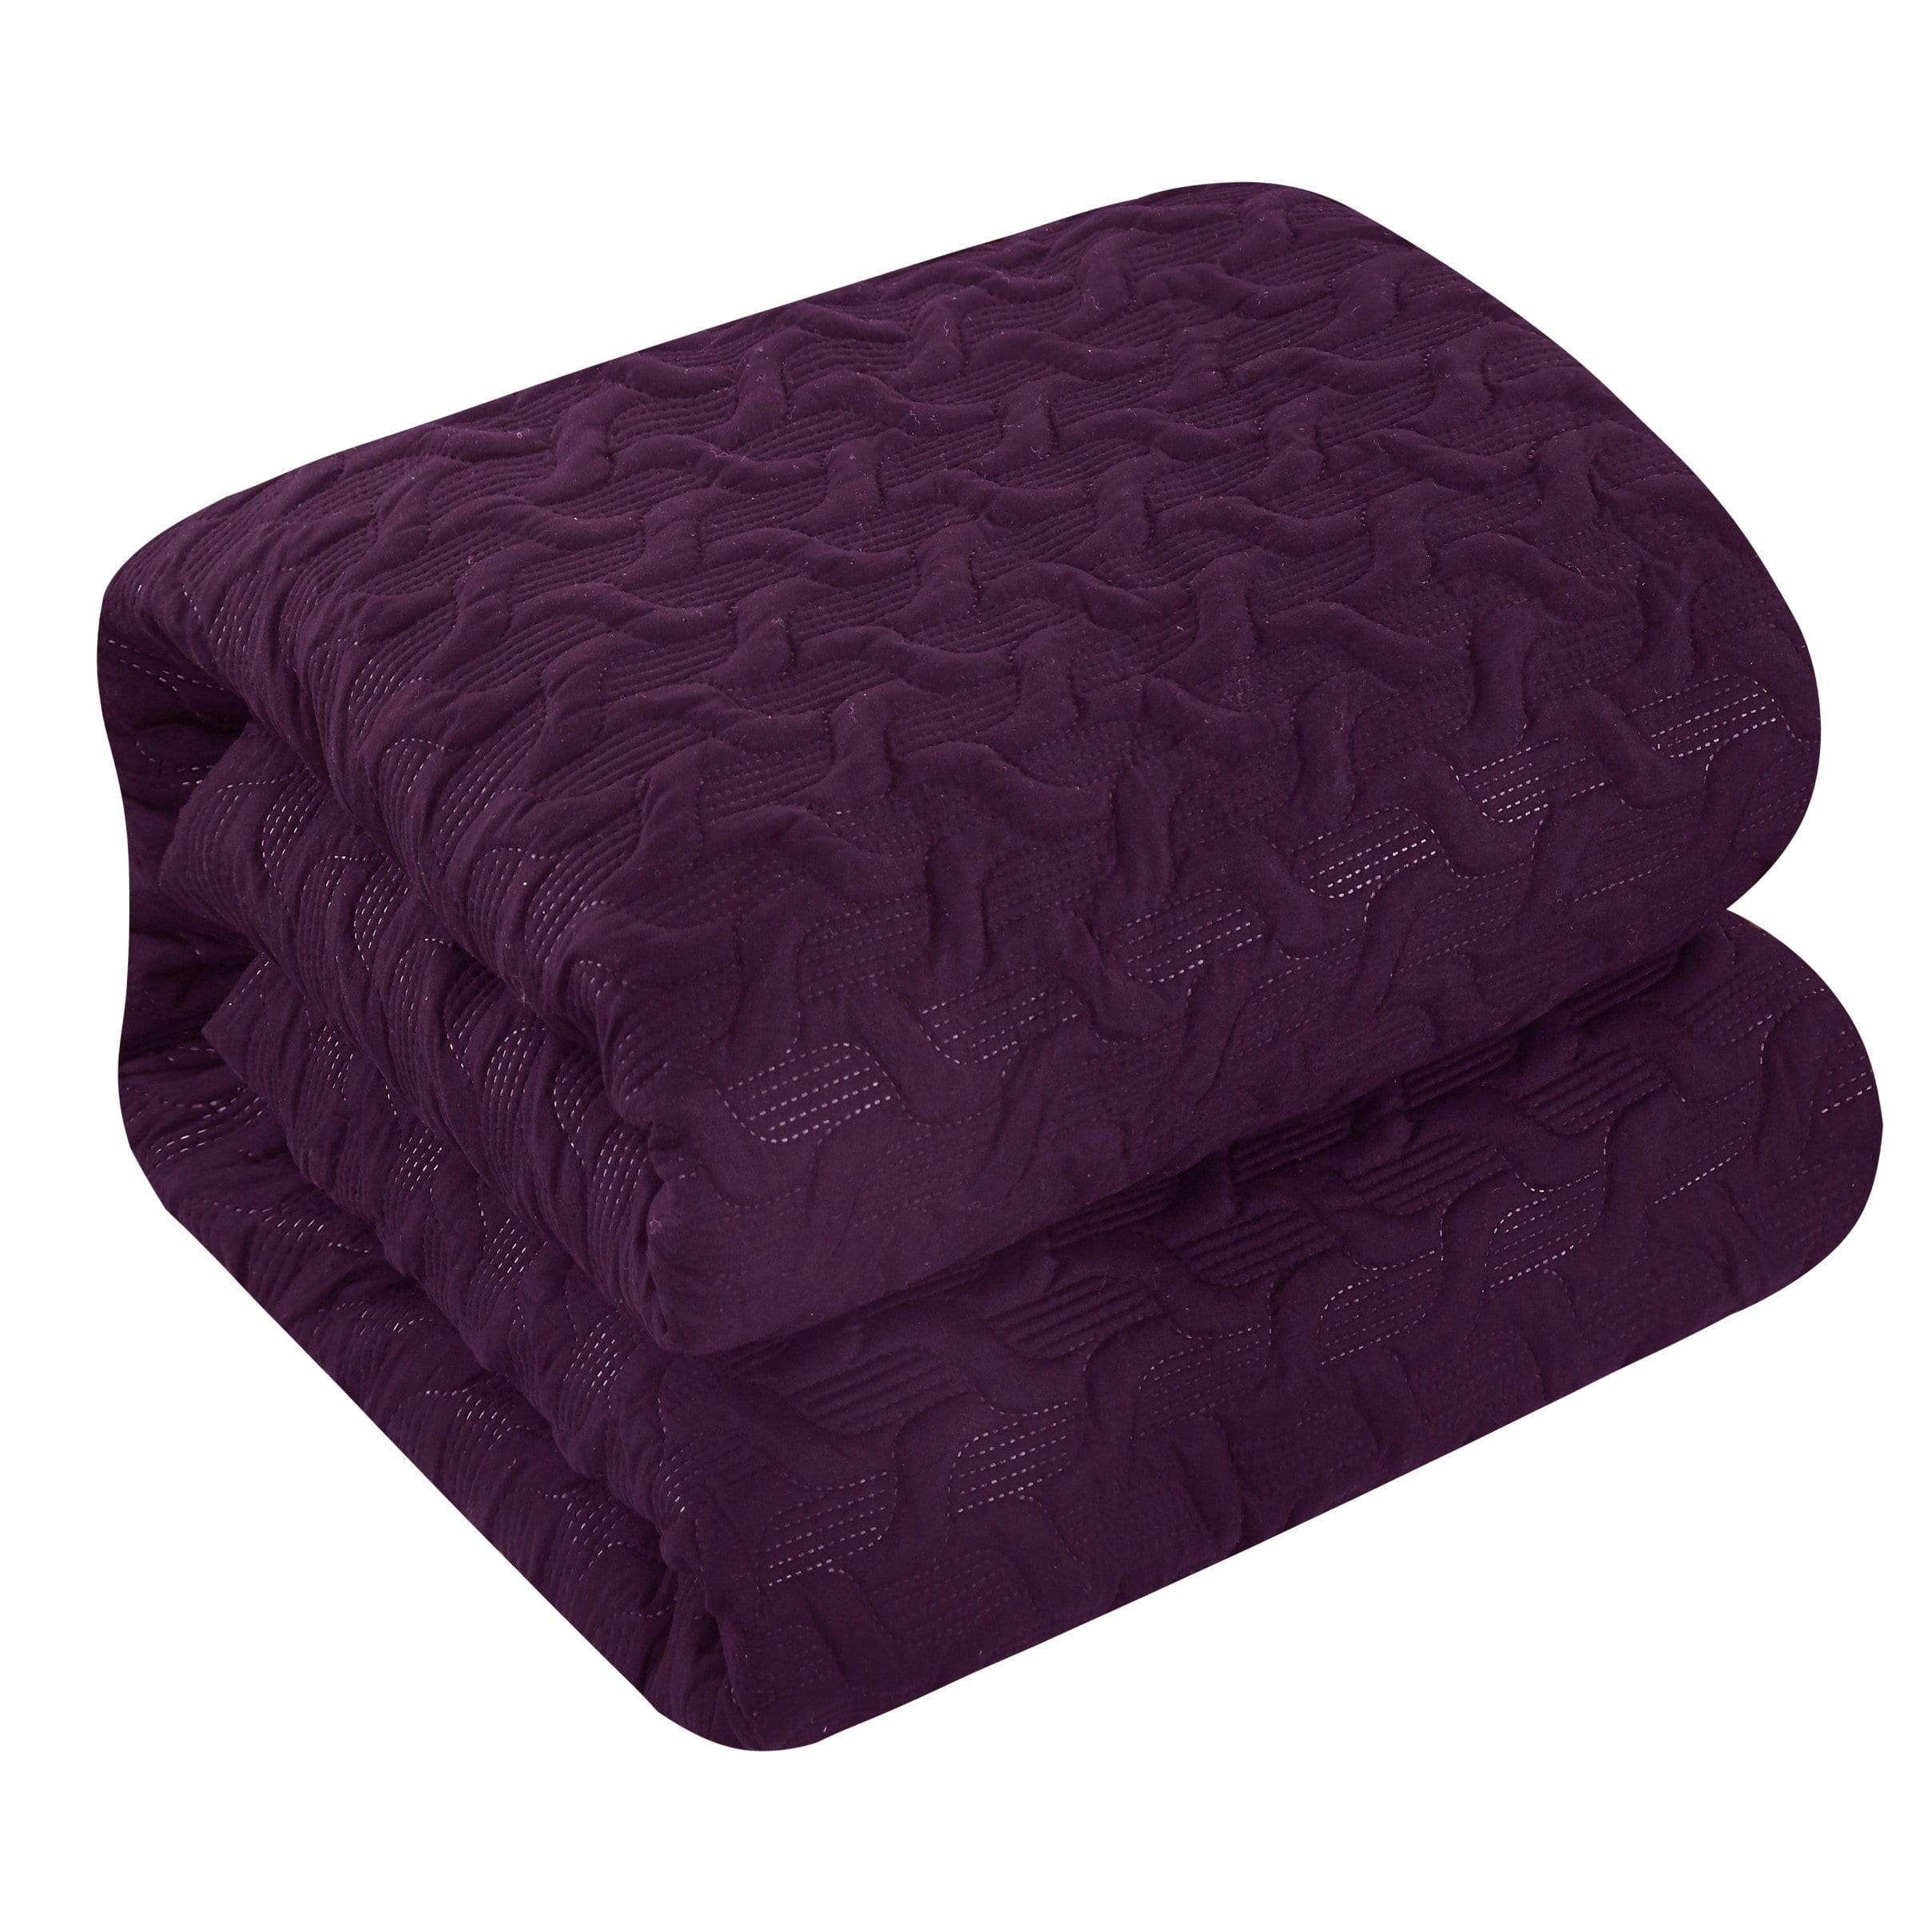 Jazmine 3 Piece Embossed Comforter Set